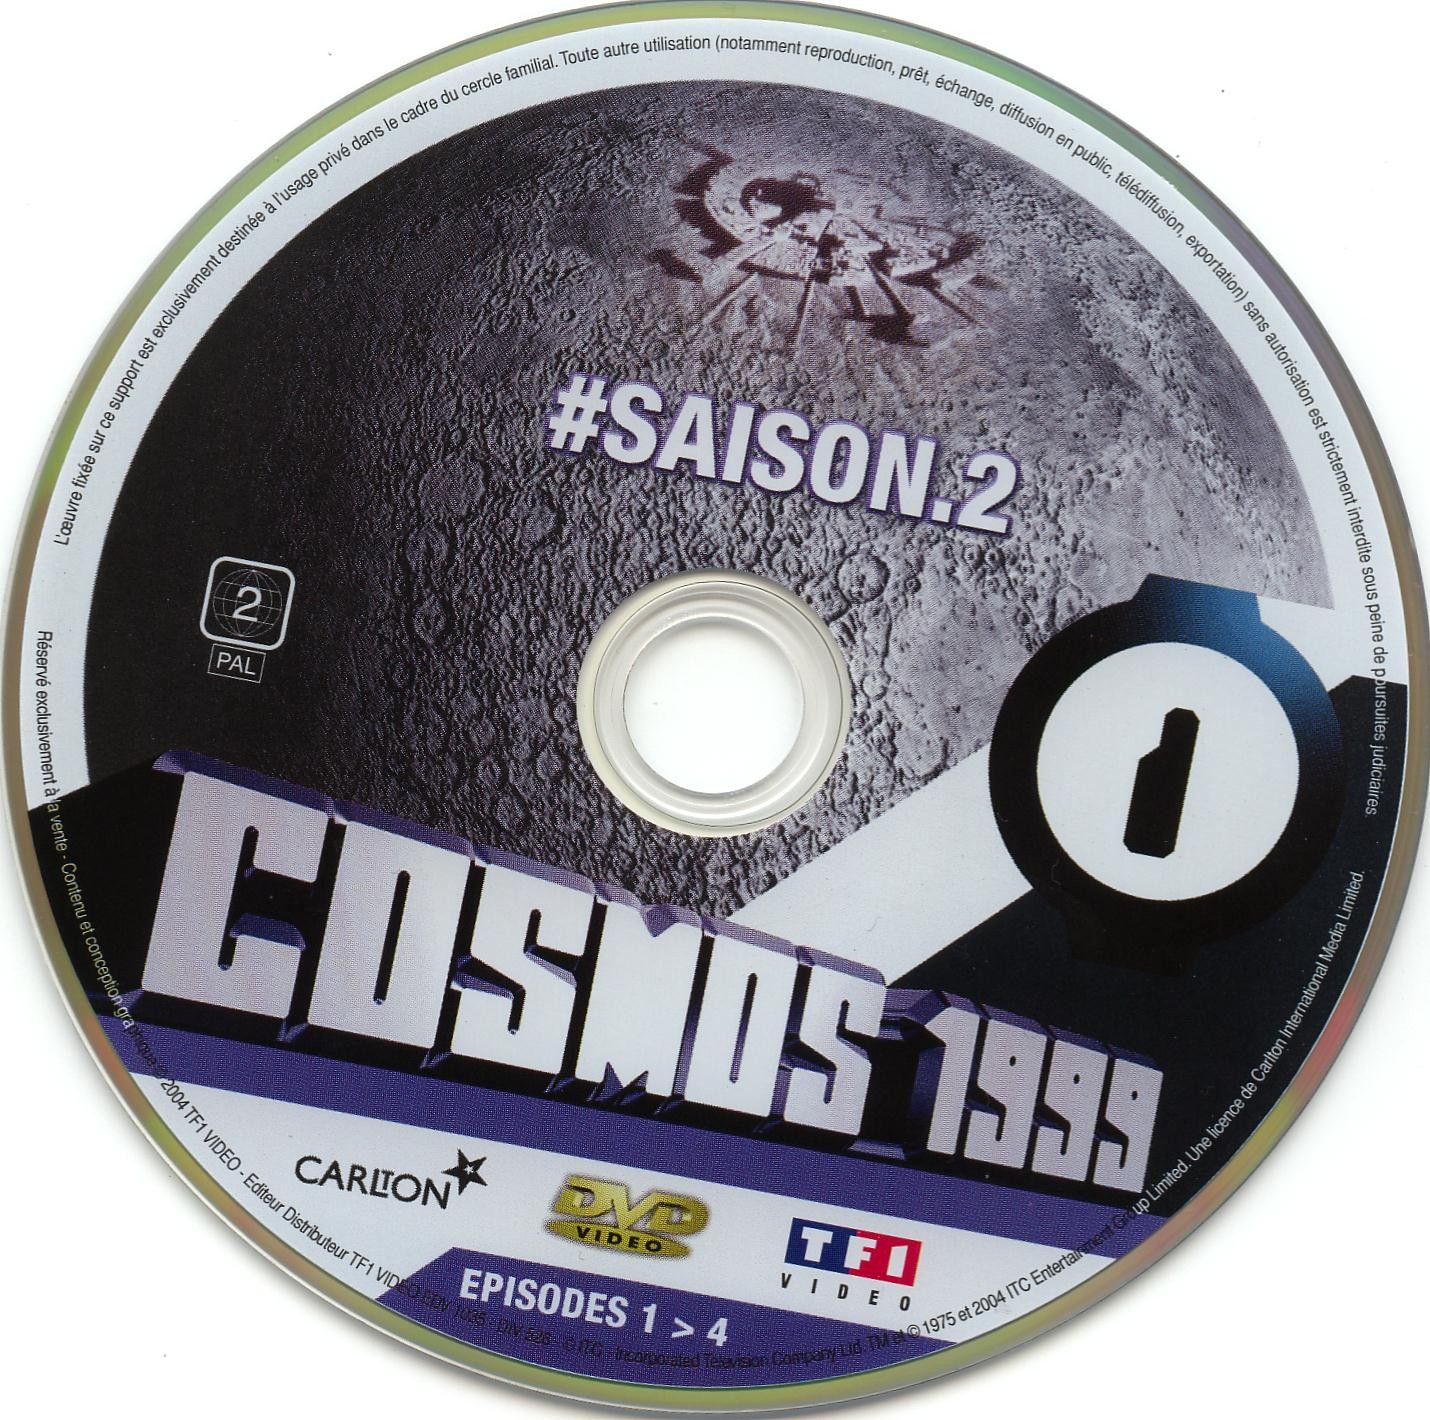 Cosmos 1999 saison 2 dvd 1